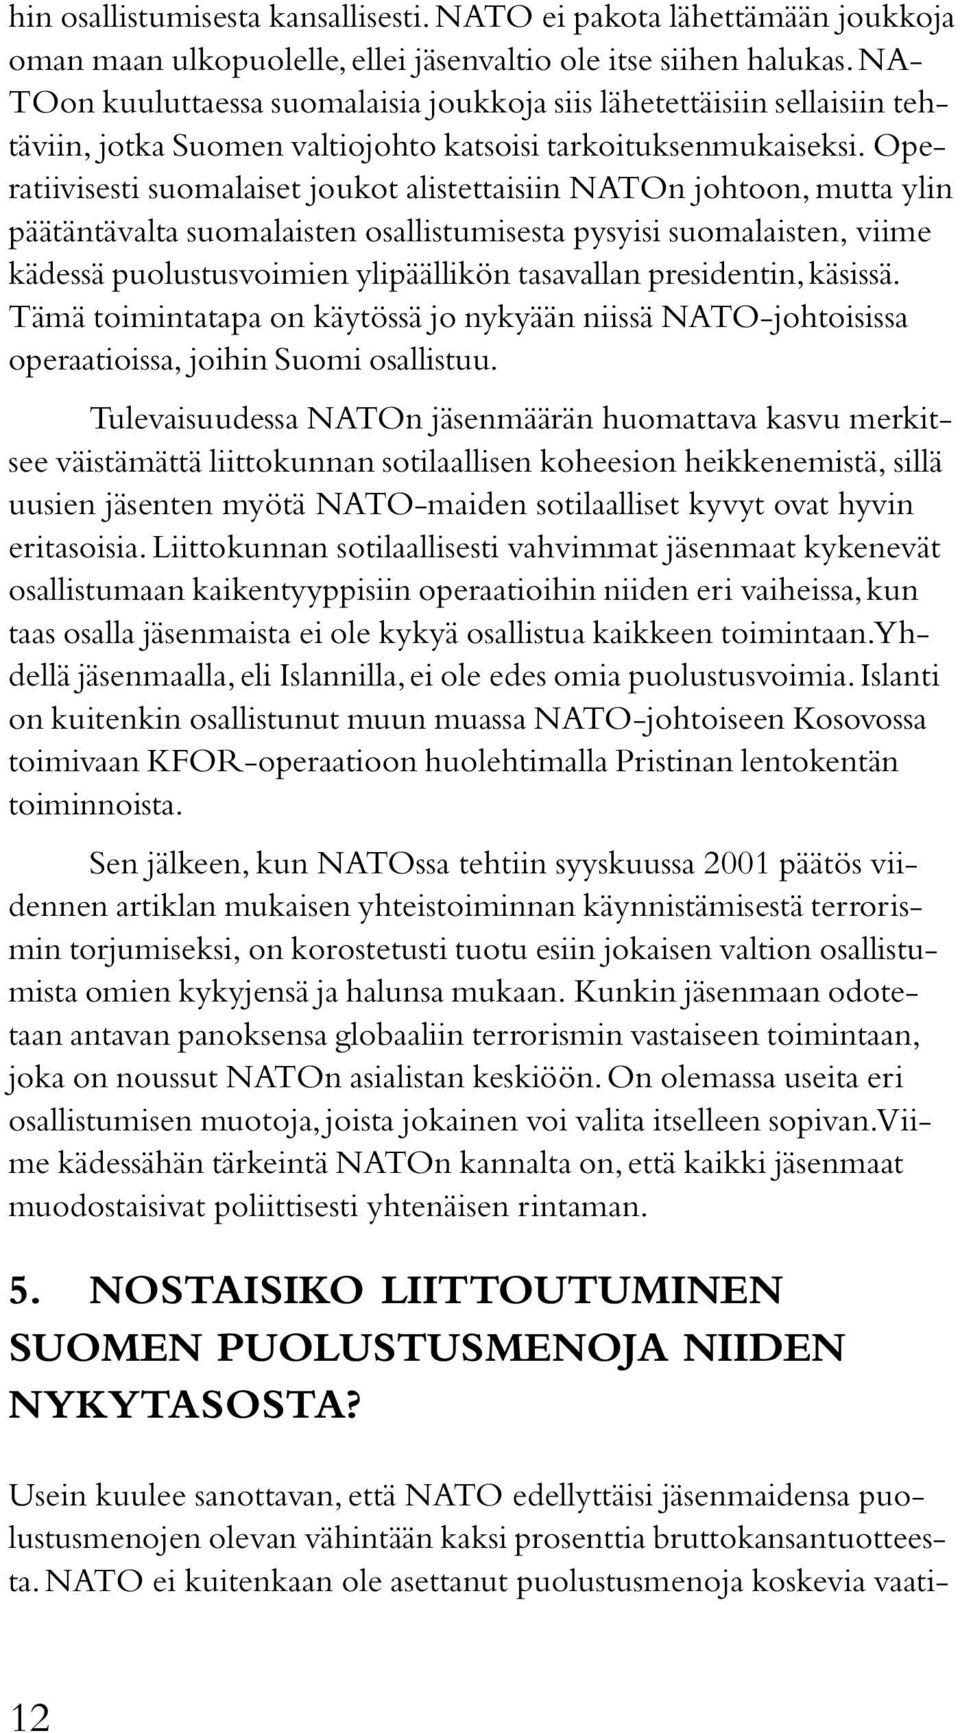 Operatiivisesti suomalaiset joukot alistettaisiin NATOn johtoon, mutta ylin päätäntävalta suomalaisten osallistumisesta pysyisi suomalaisten, viime kädessä puolustusvoimien ylipäällikön tasavallan